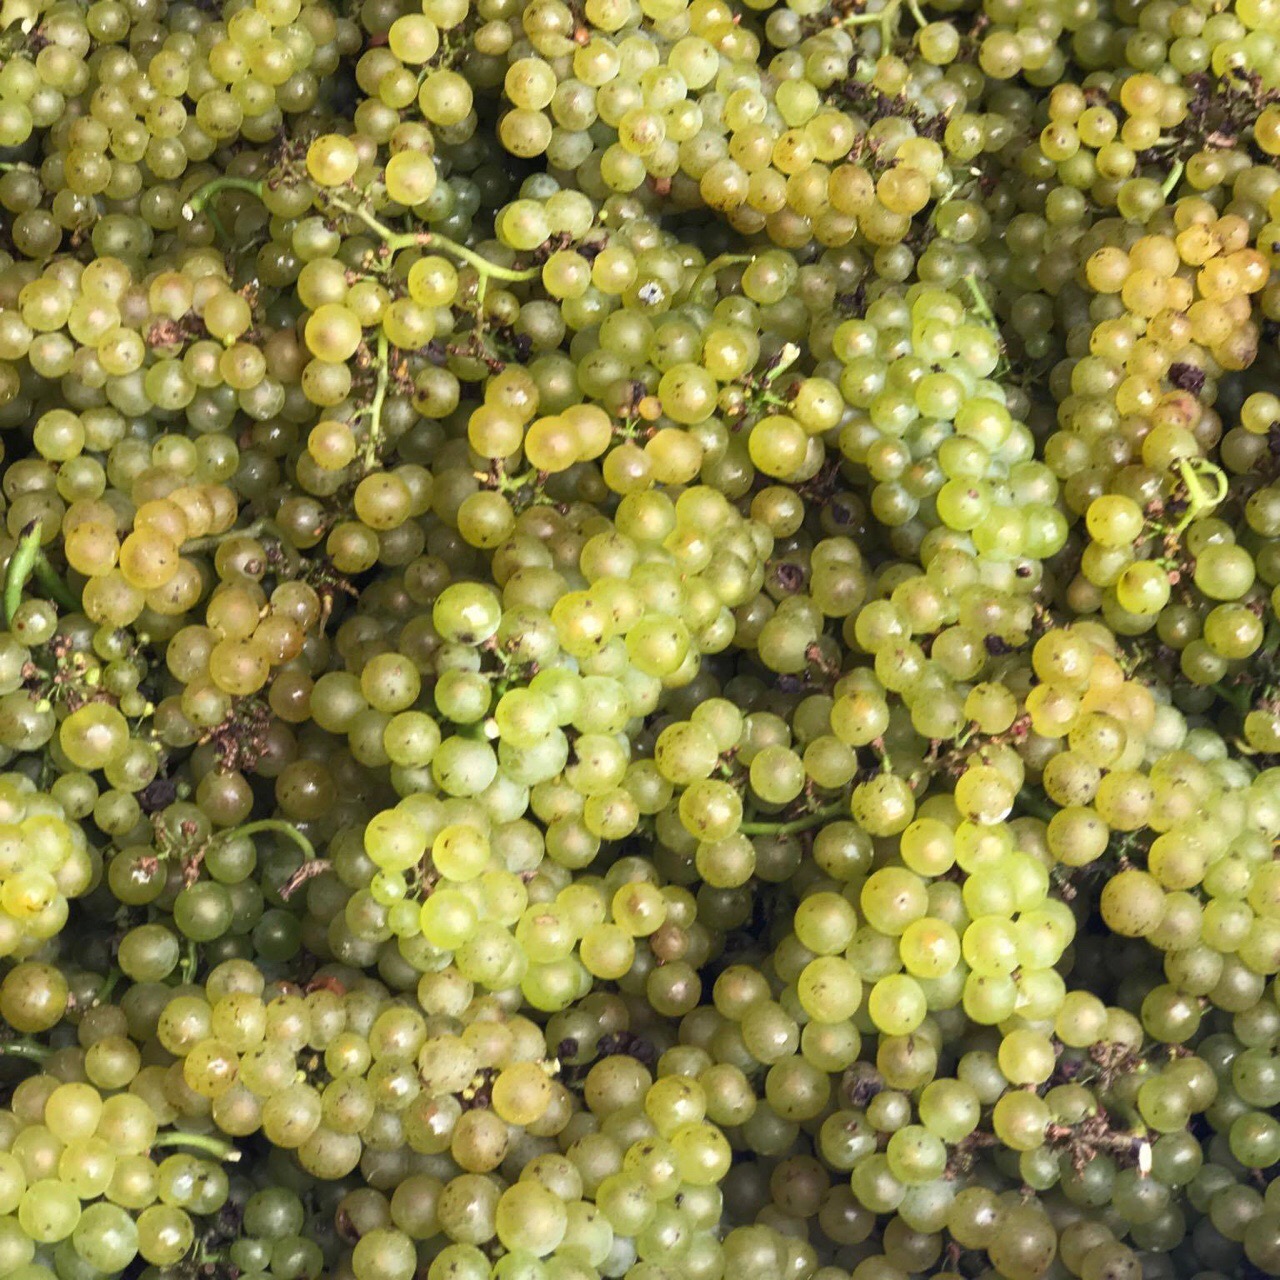 Vermentino grapes courtesy of Piccione Vineyards